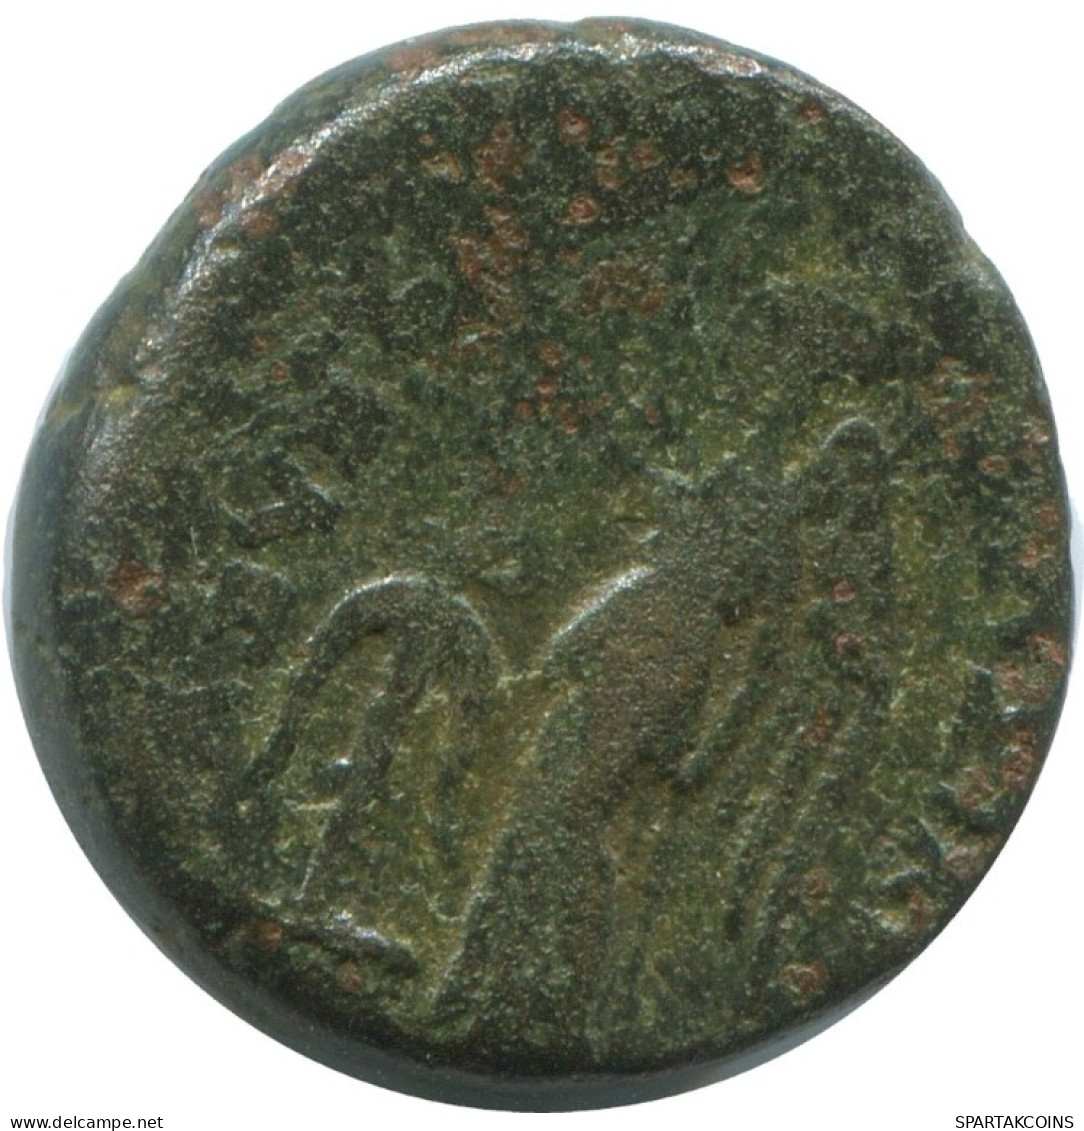 ATHENA NIKE AUTHENTIC ORIGINAL ANCIENT GREEK Coin 7g/20mm #AF855.12.U.A - Griechische Münzen